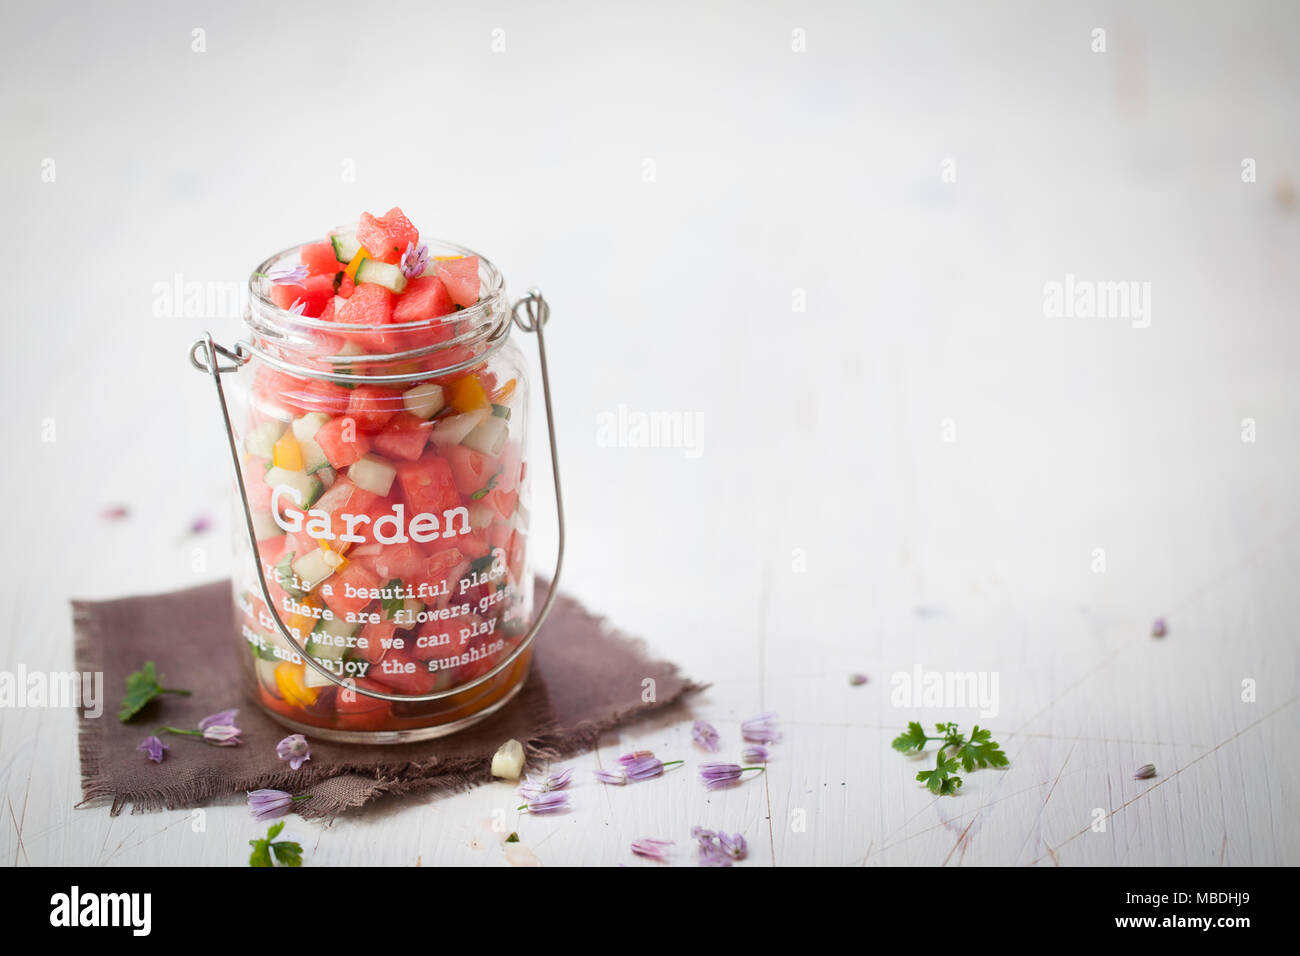 Bunter pikanter Wassermelonensalat auf weißem Holz Hintergrund Stock Photo